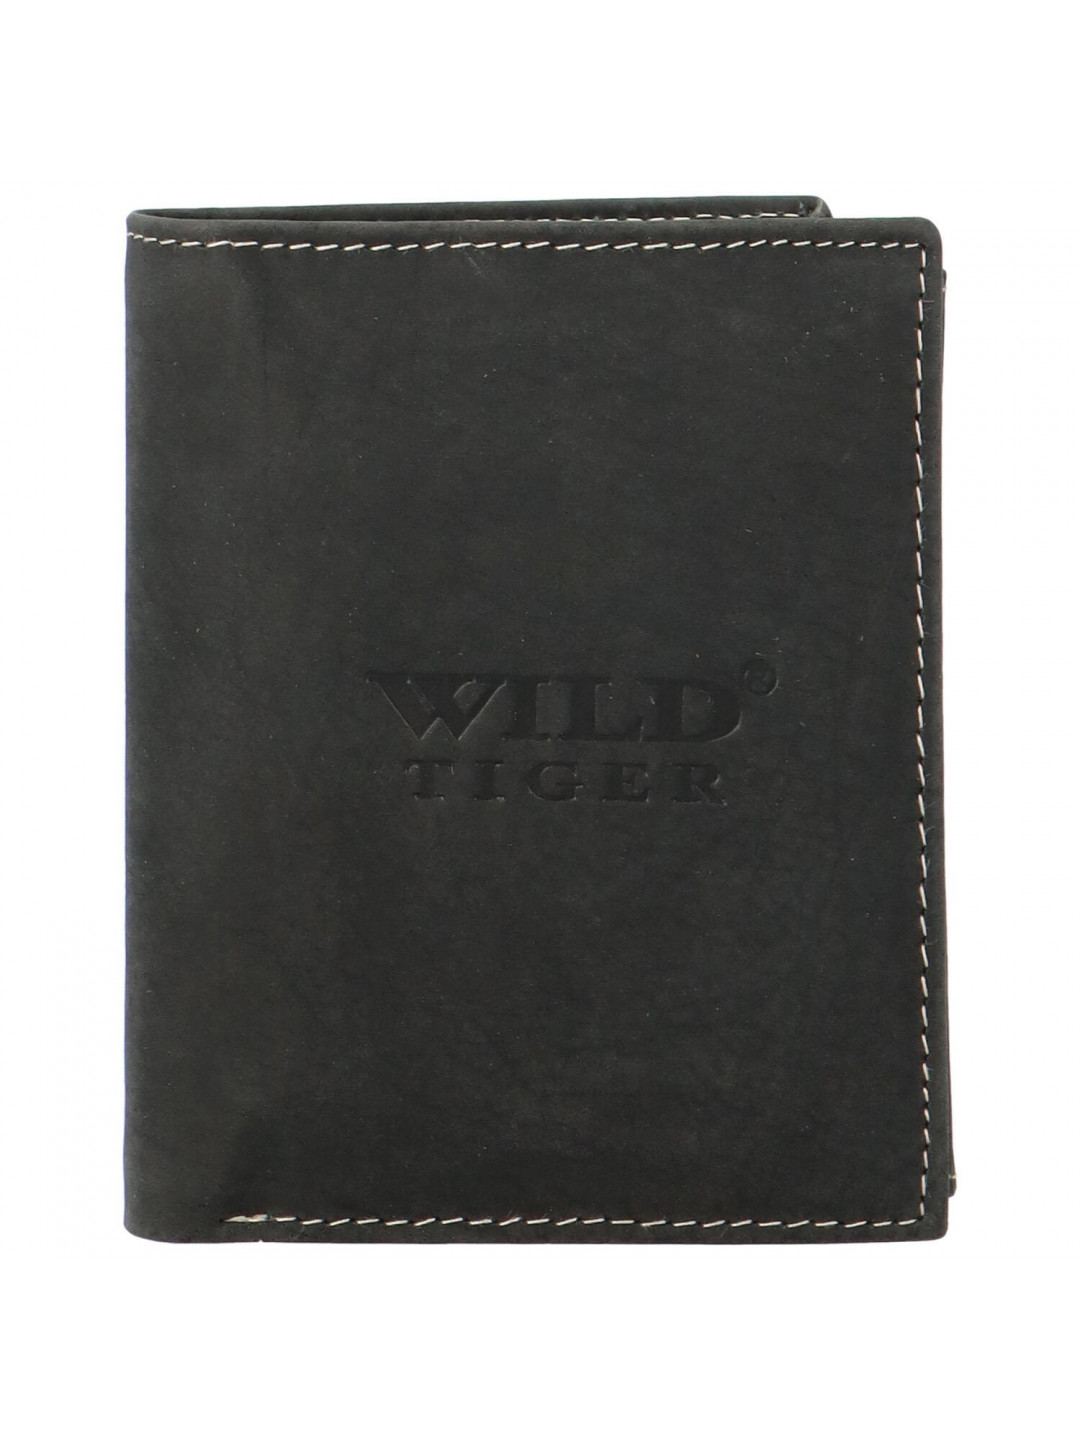 Pánská kožená peněženka černá – Wild Tiger Stefan